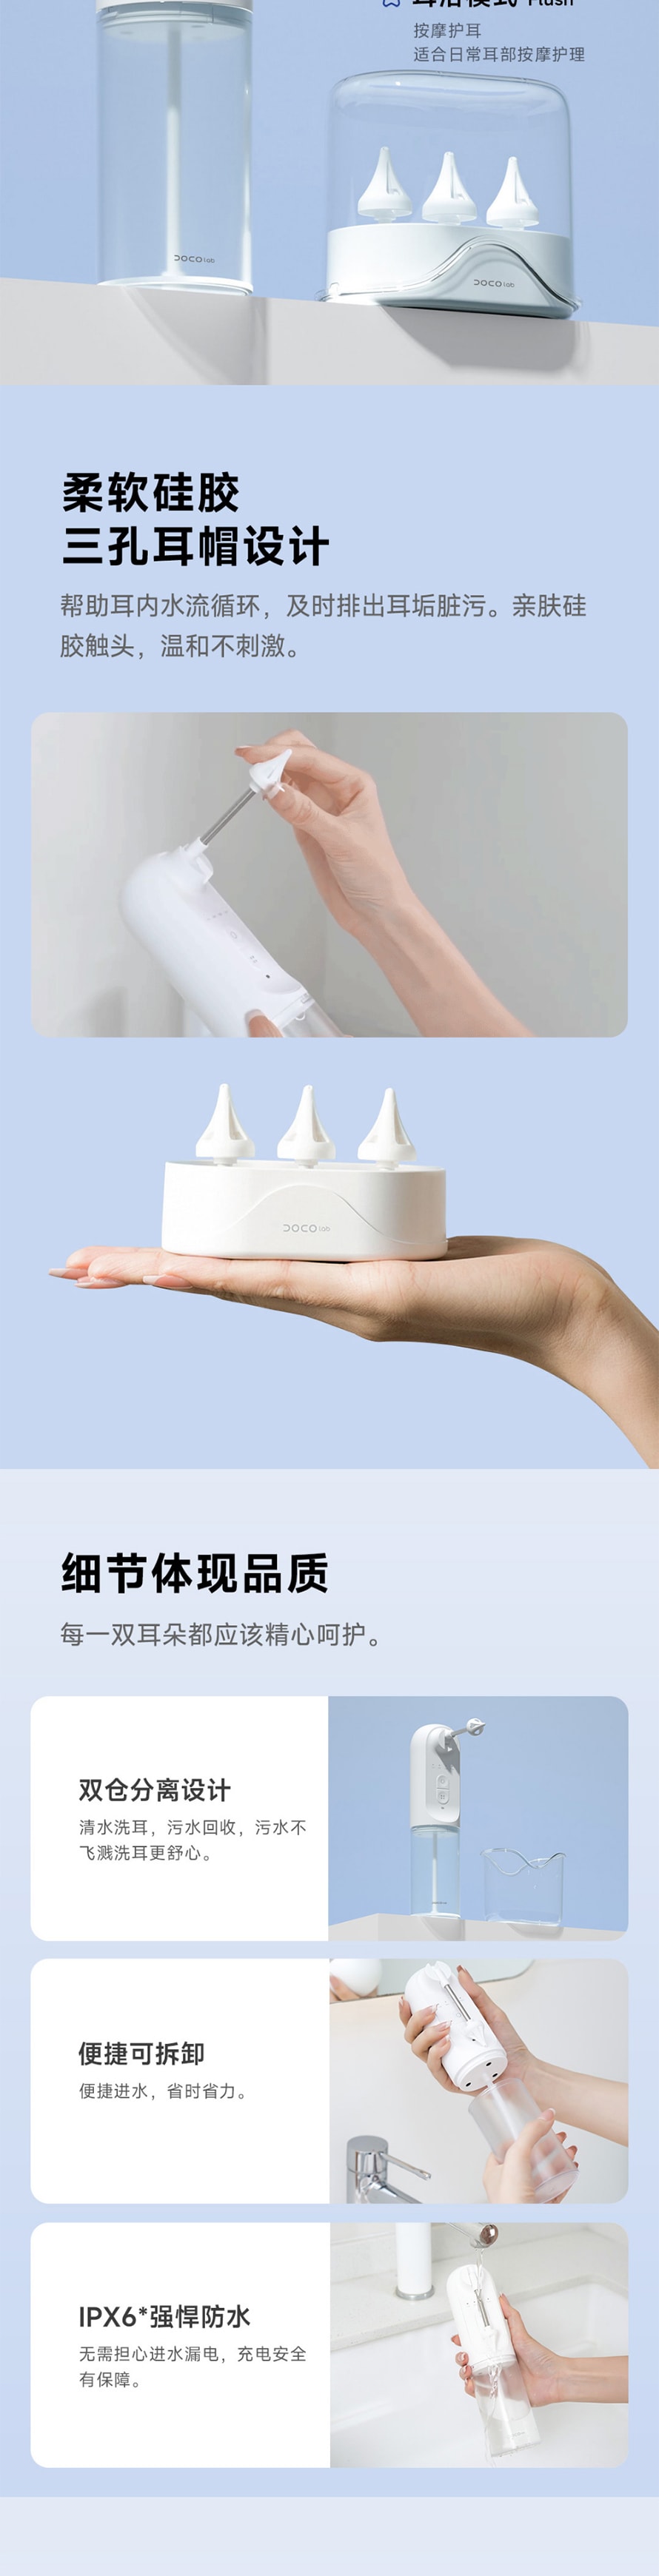 【中国直邮】小米有品 DOCO 电动洗耳器 告别干挖 畅享轻柔水洗耳浴SPA 白色